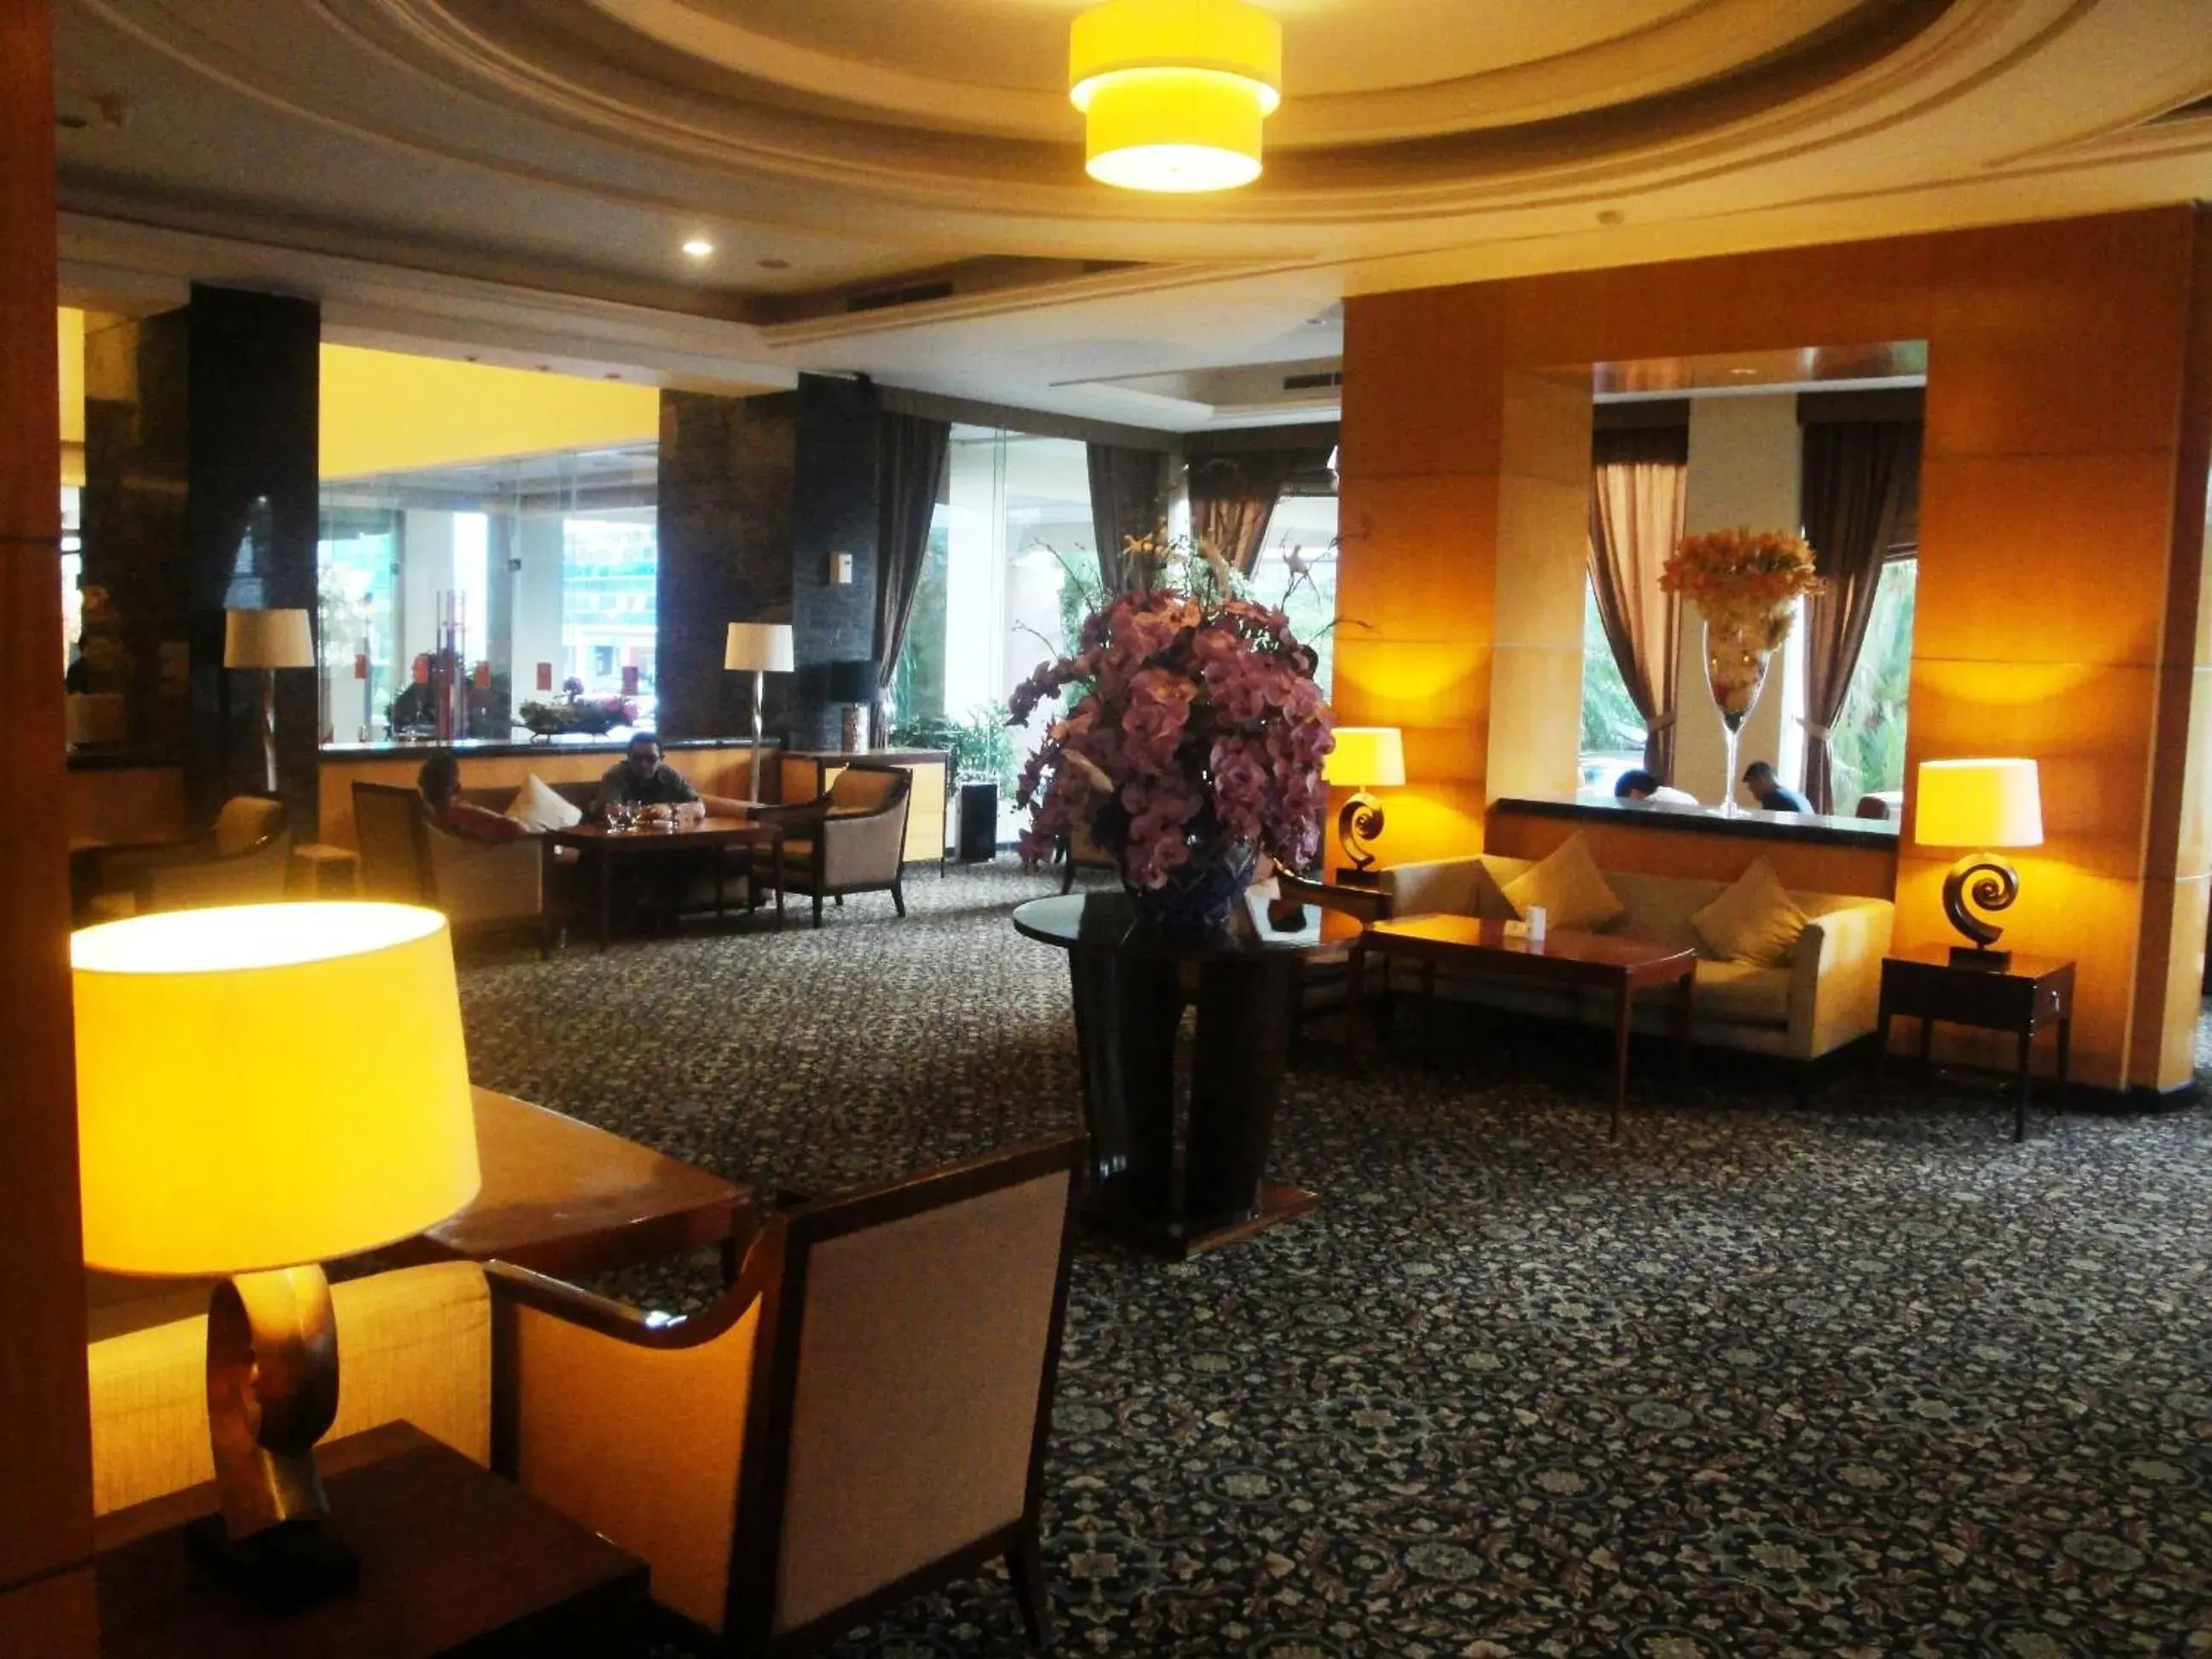 Lobby or reception in Manado Quality Hotel